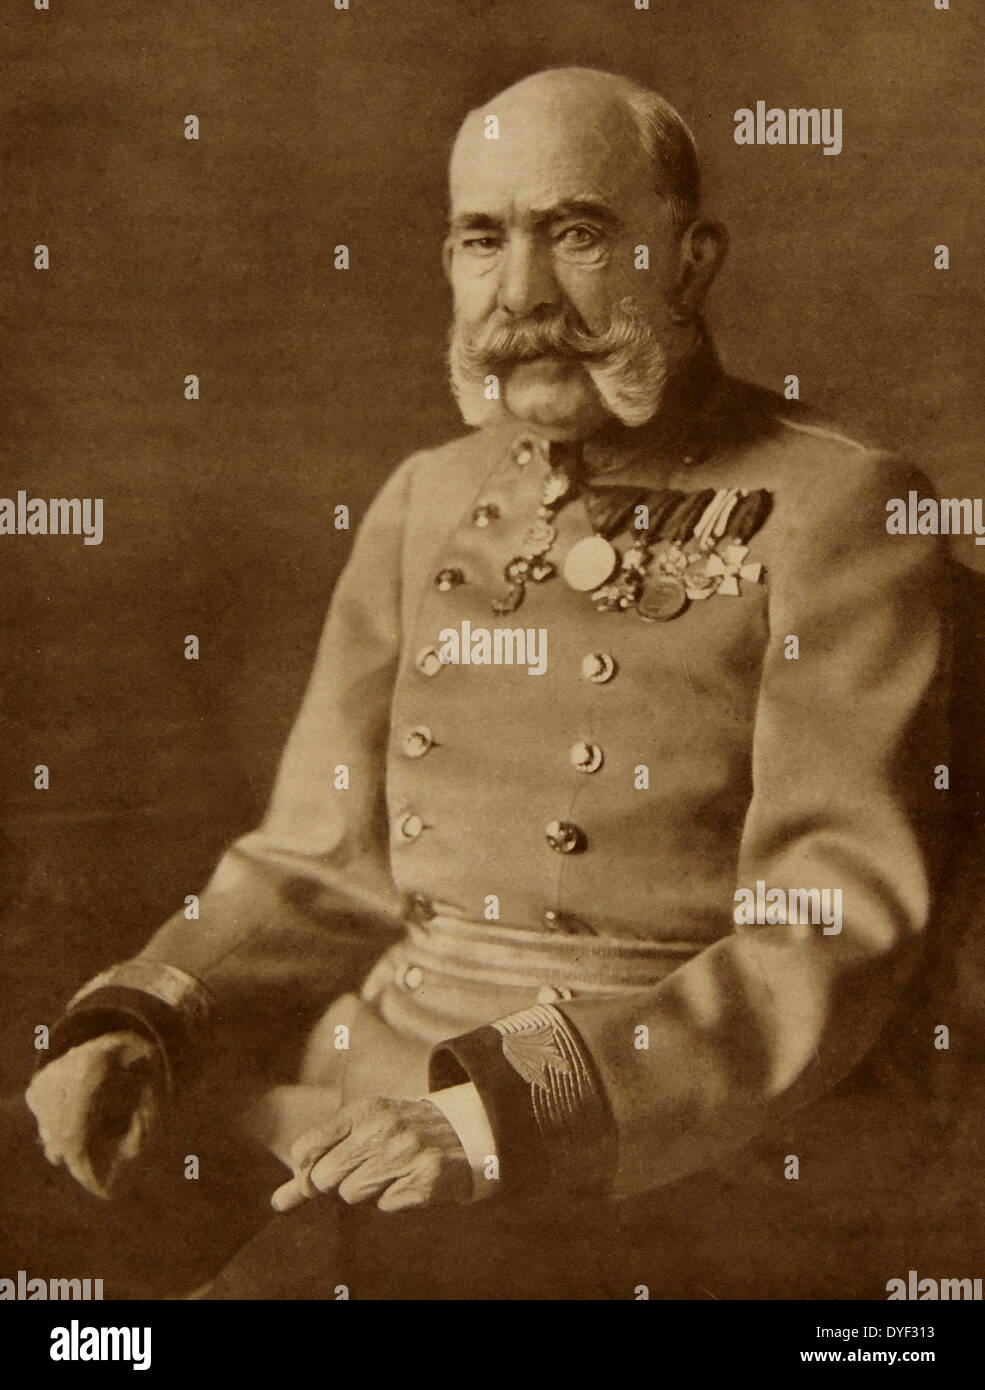 Franz Joseph I oder Franz Josephs I., 18. August 1830 und dem 21. November 1916. Kaiser von Österreich und Apostolischer König von Ungarn von 1848 bis zu seinem Tod 1916. Stockfoto